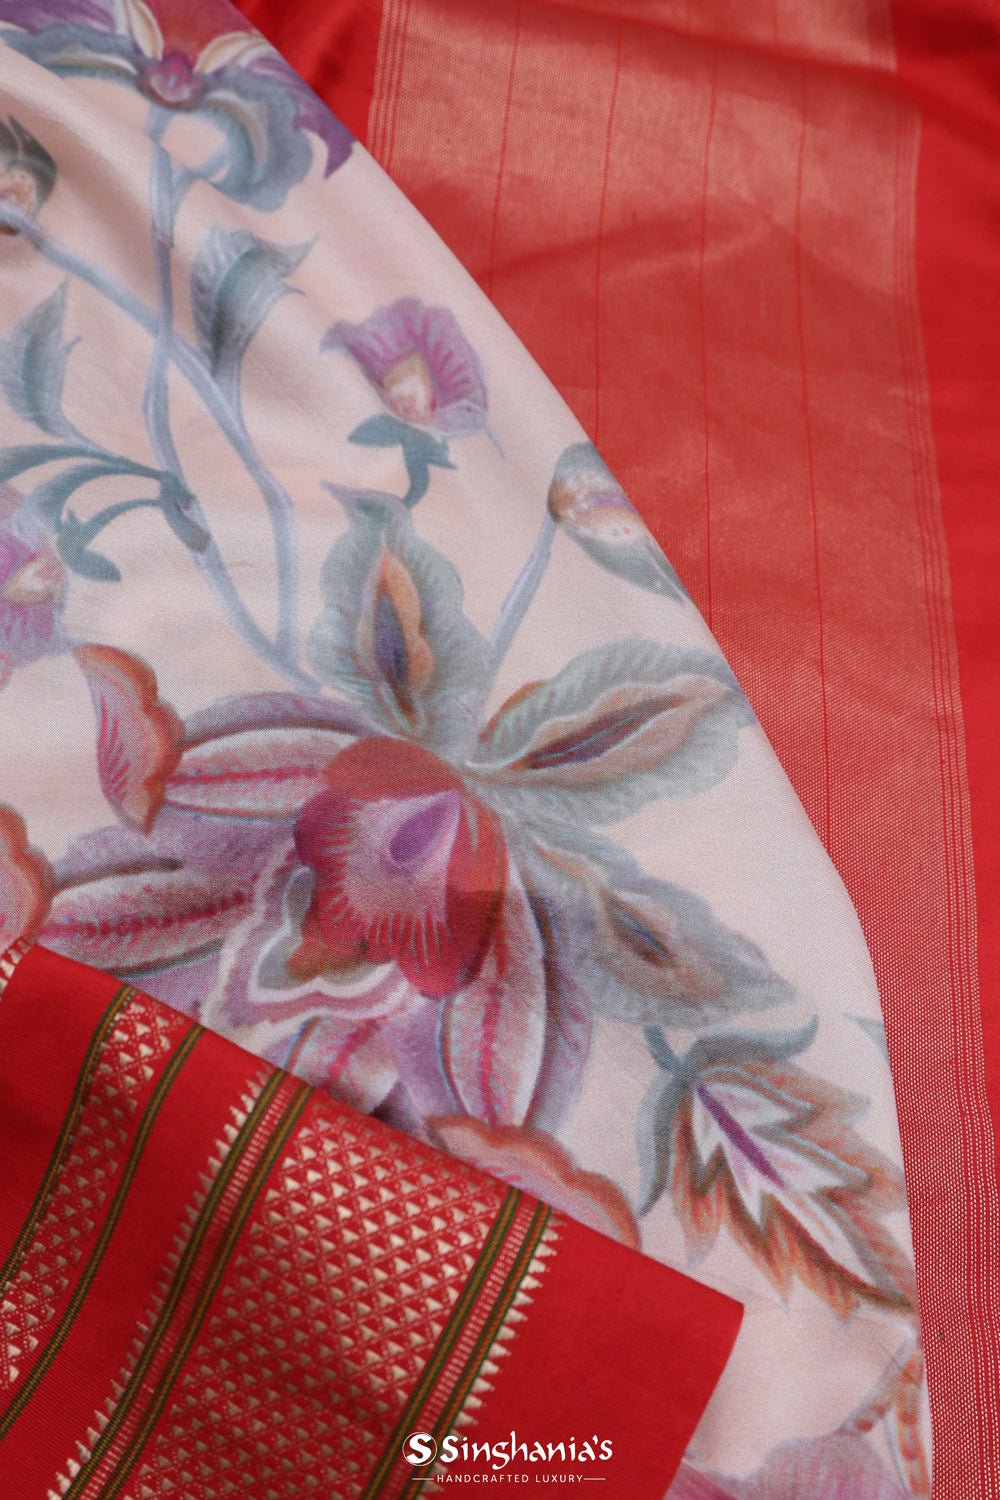 Lemonade Pink Printed Kanjivaram Silk Saree With Floral Design